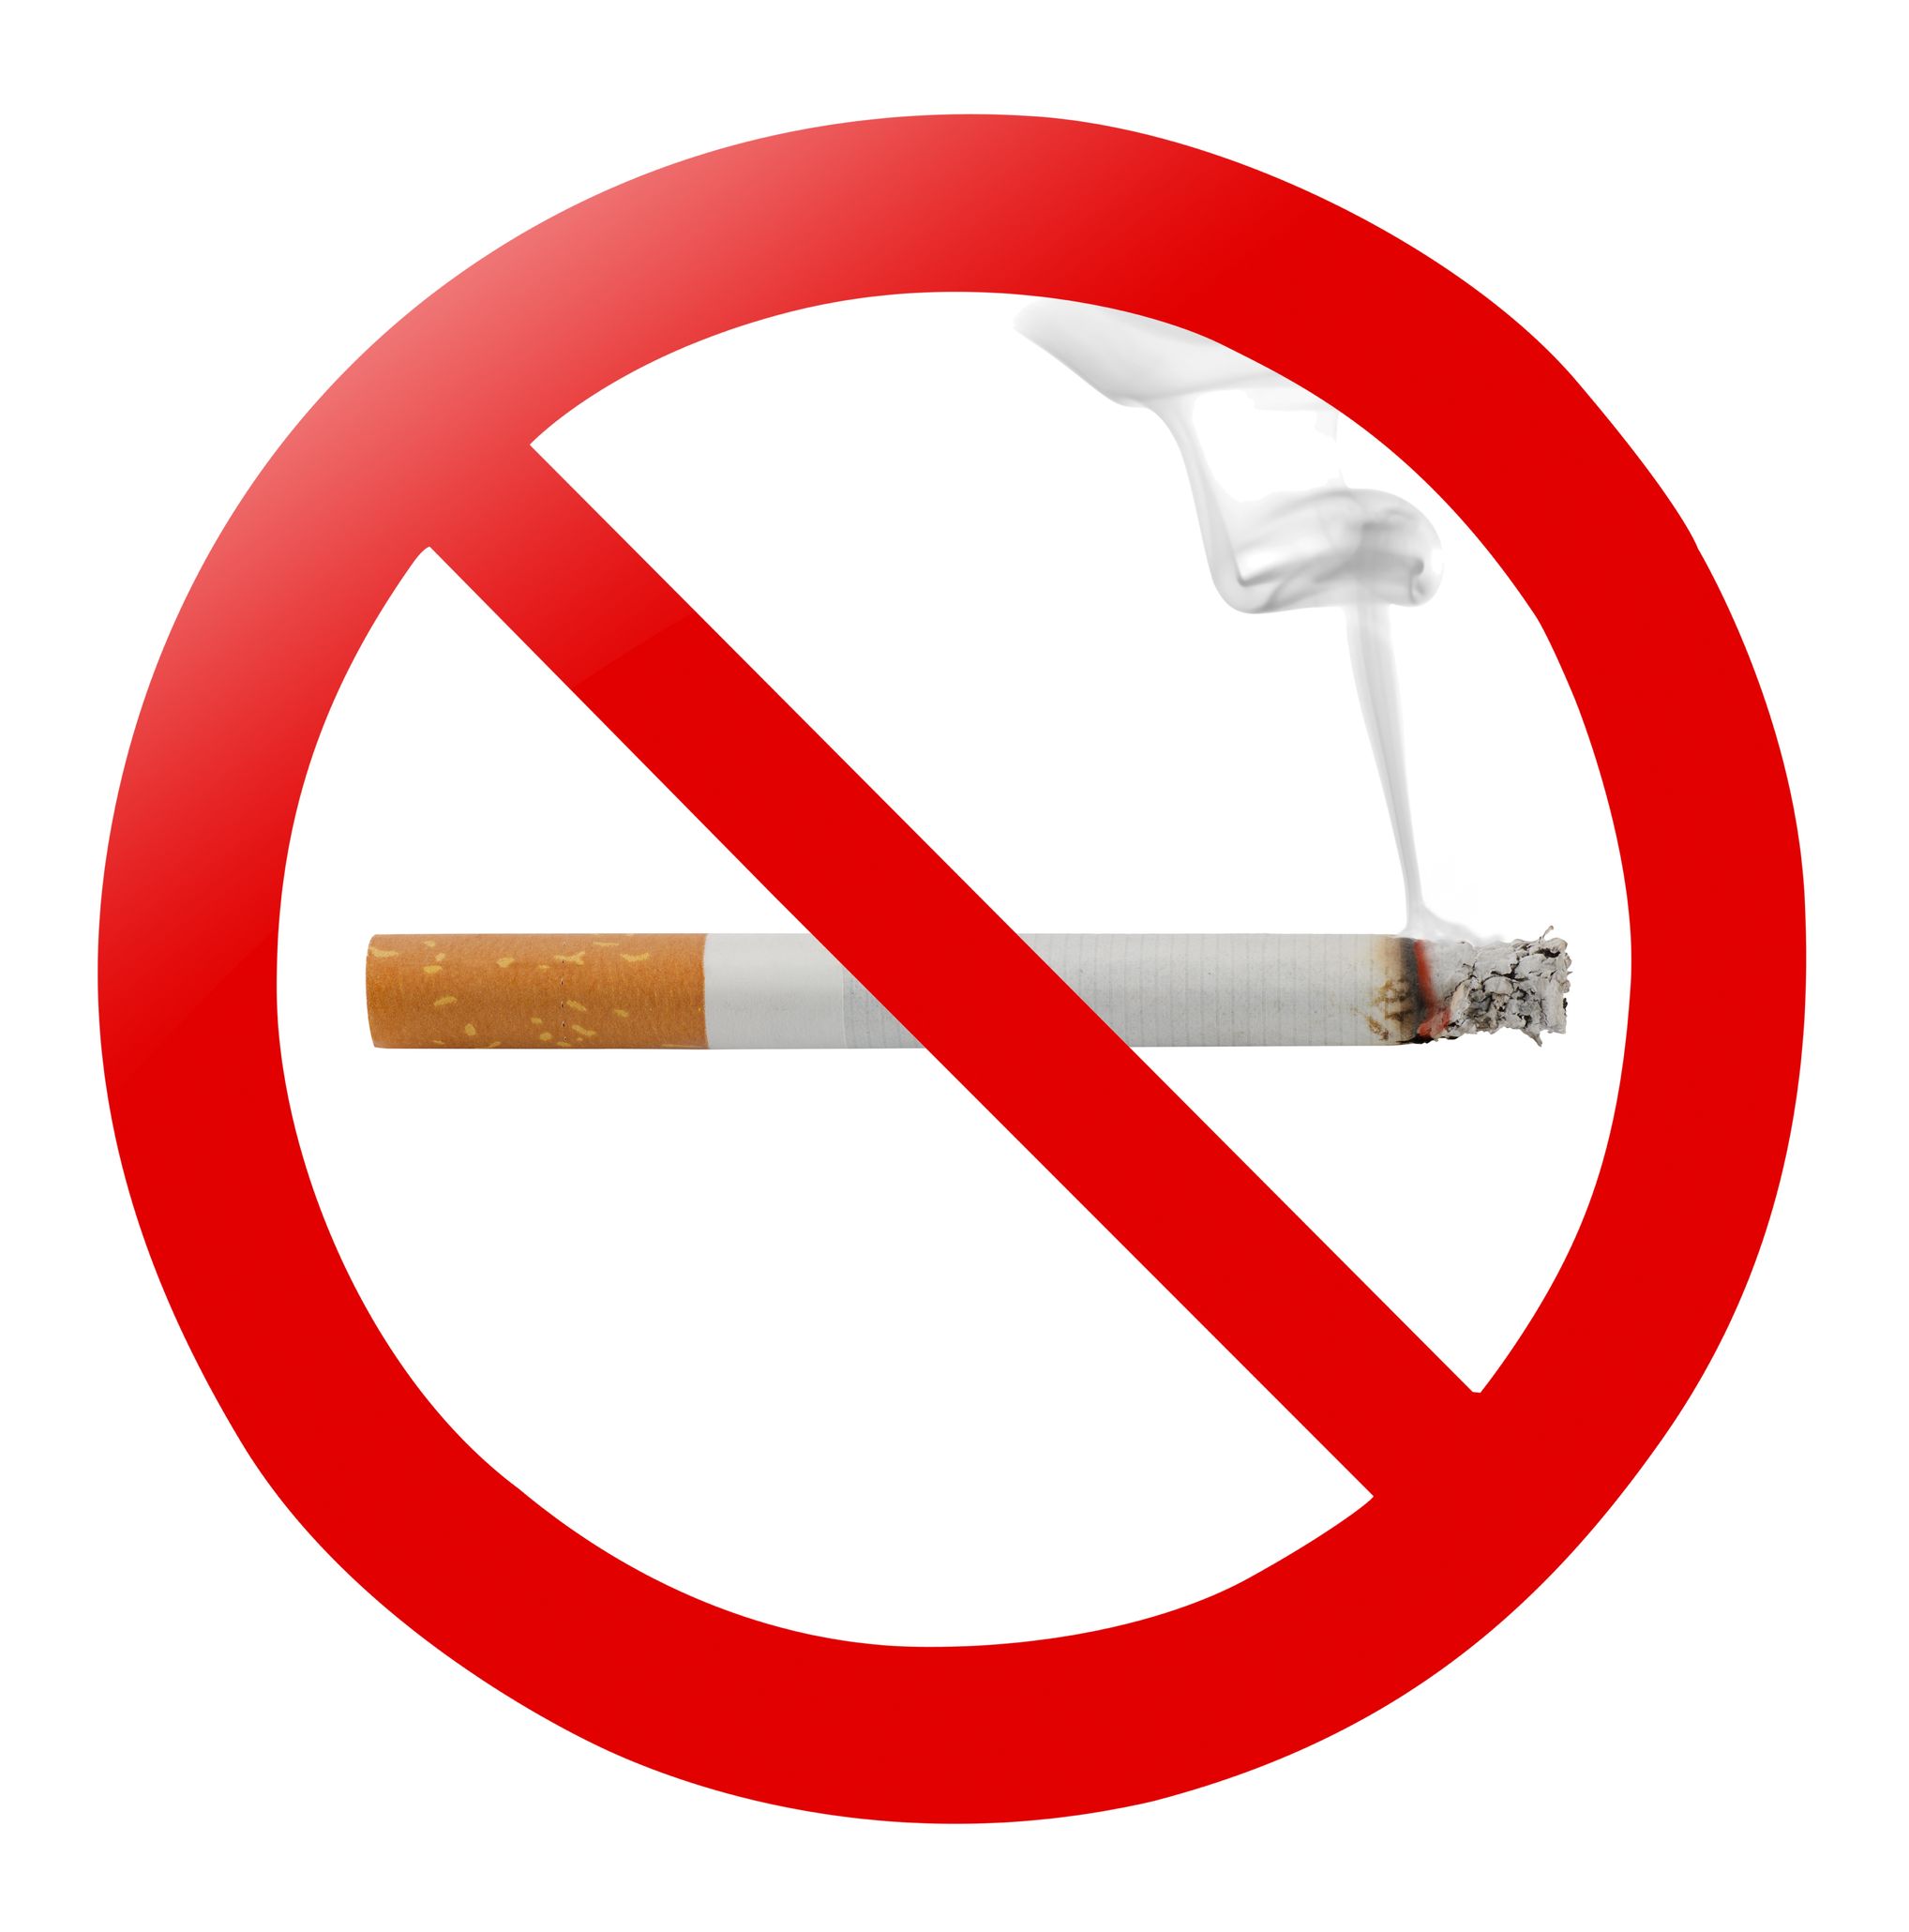 10 Habit Breaking Remedies to Stop You Smoking